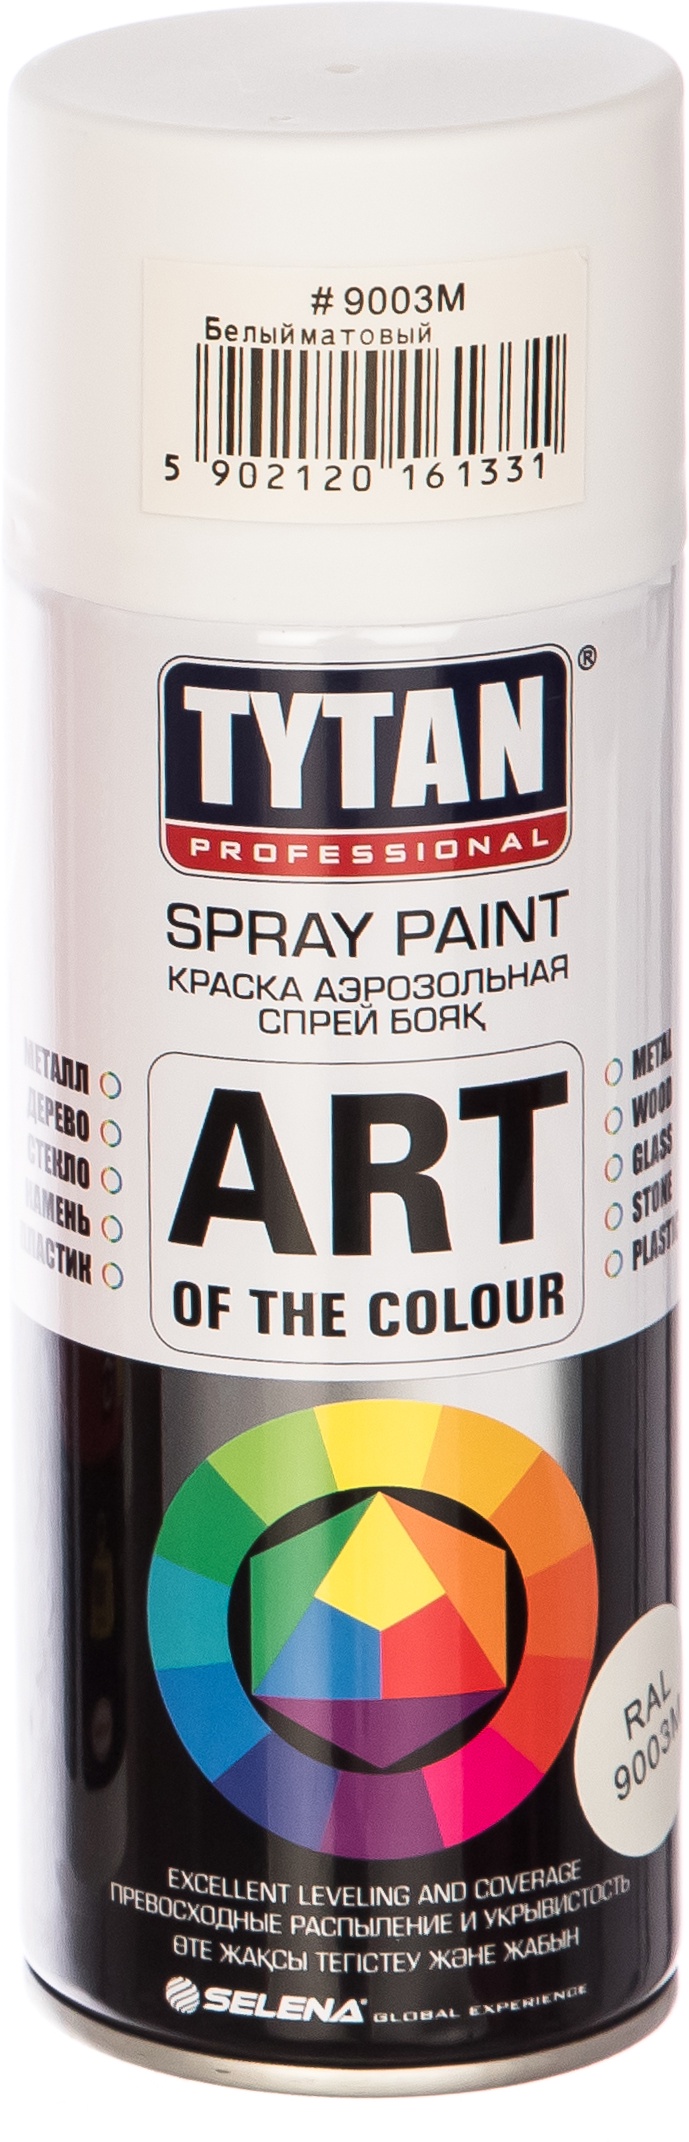 Краска TYTAN Professional Art of the colour белая матовая RAL9003 M 400мл аэрозольная